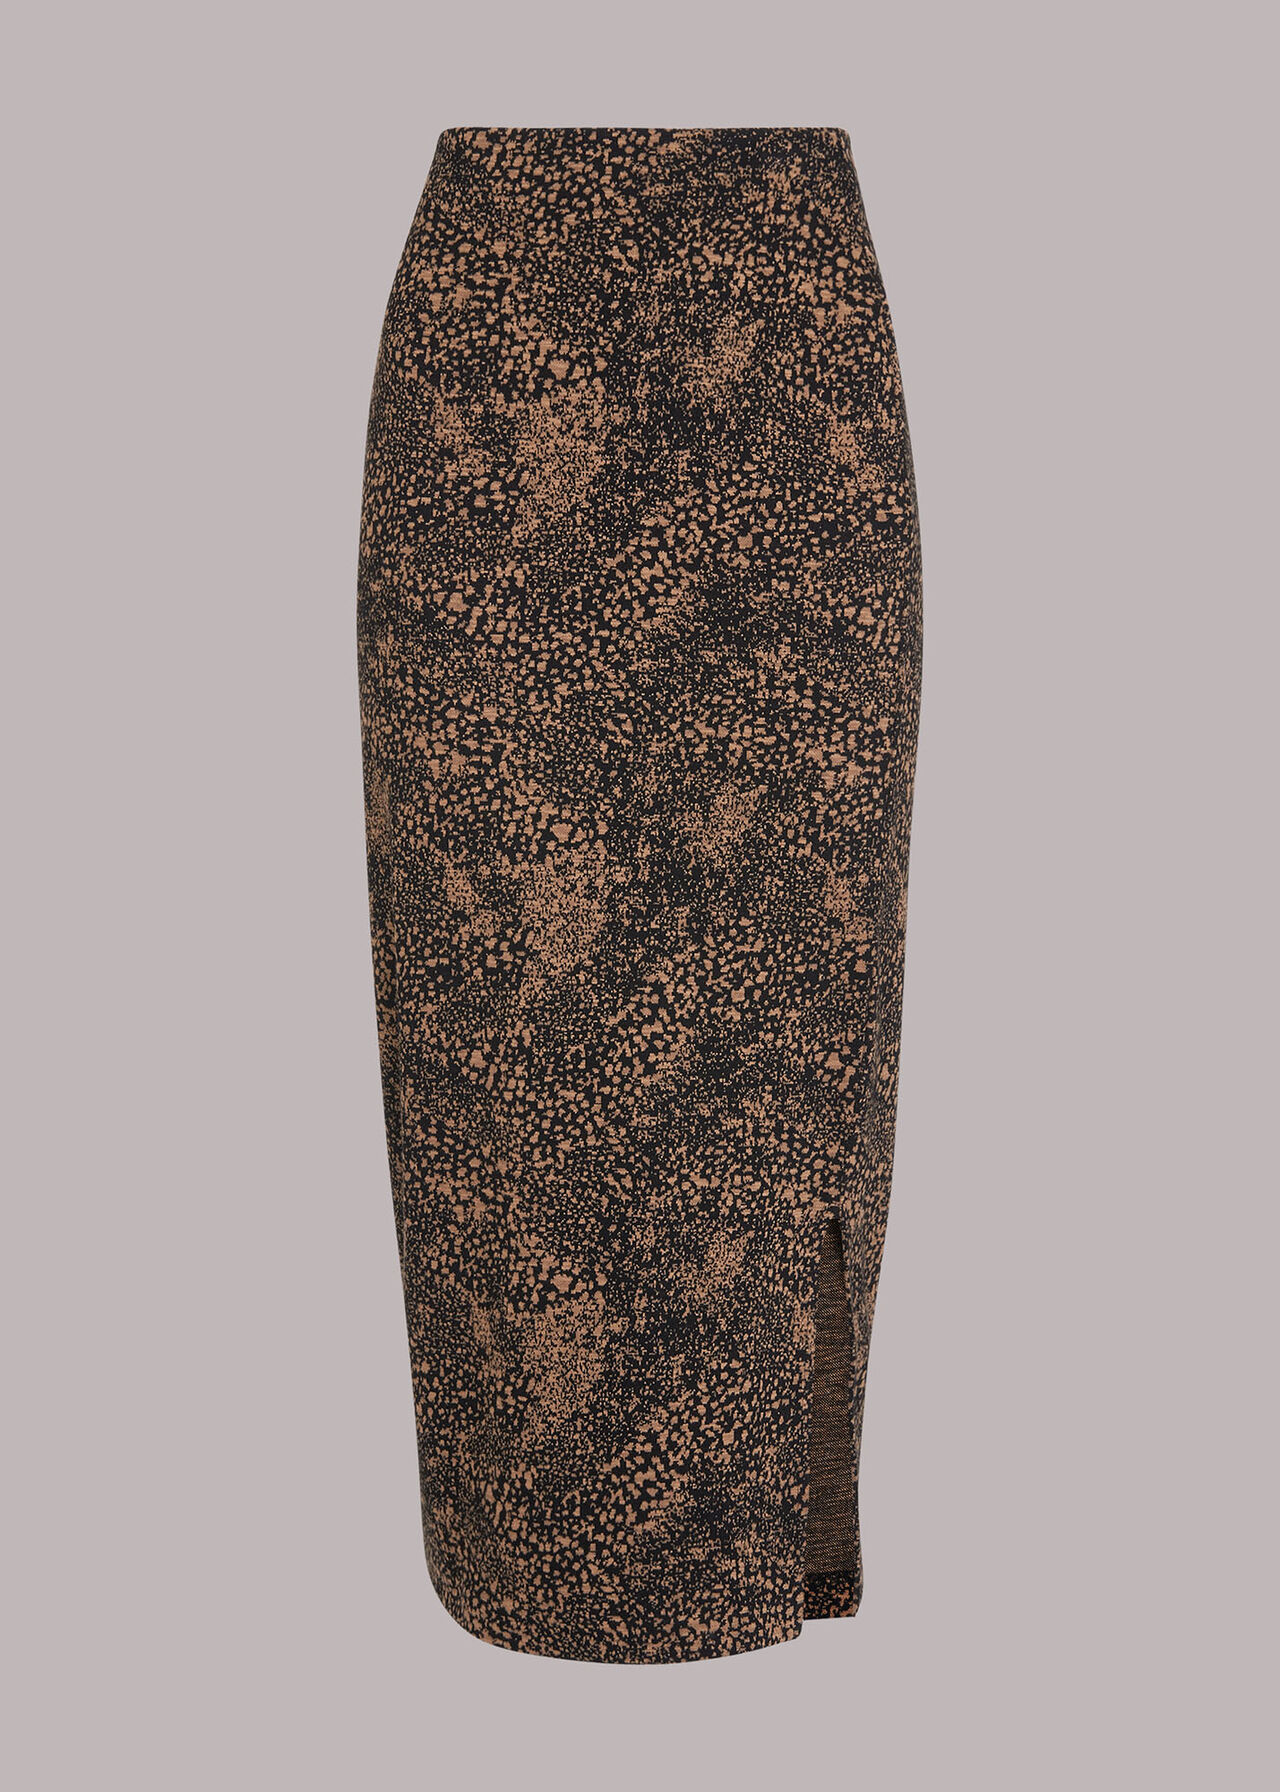 Jacquard Leopard Tube Skirt